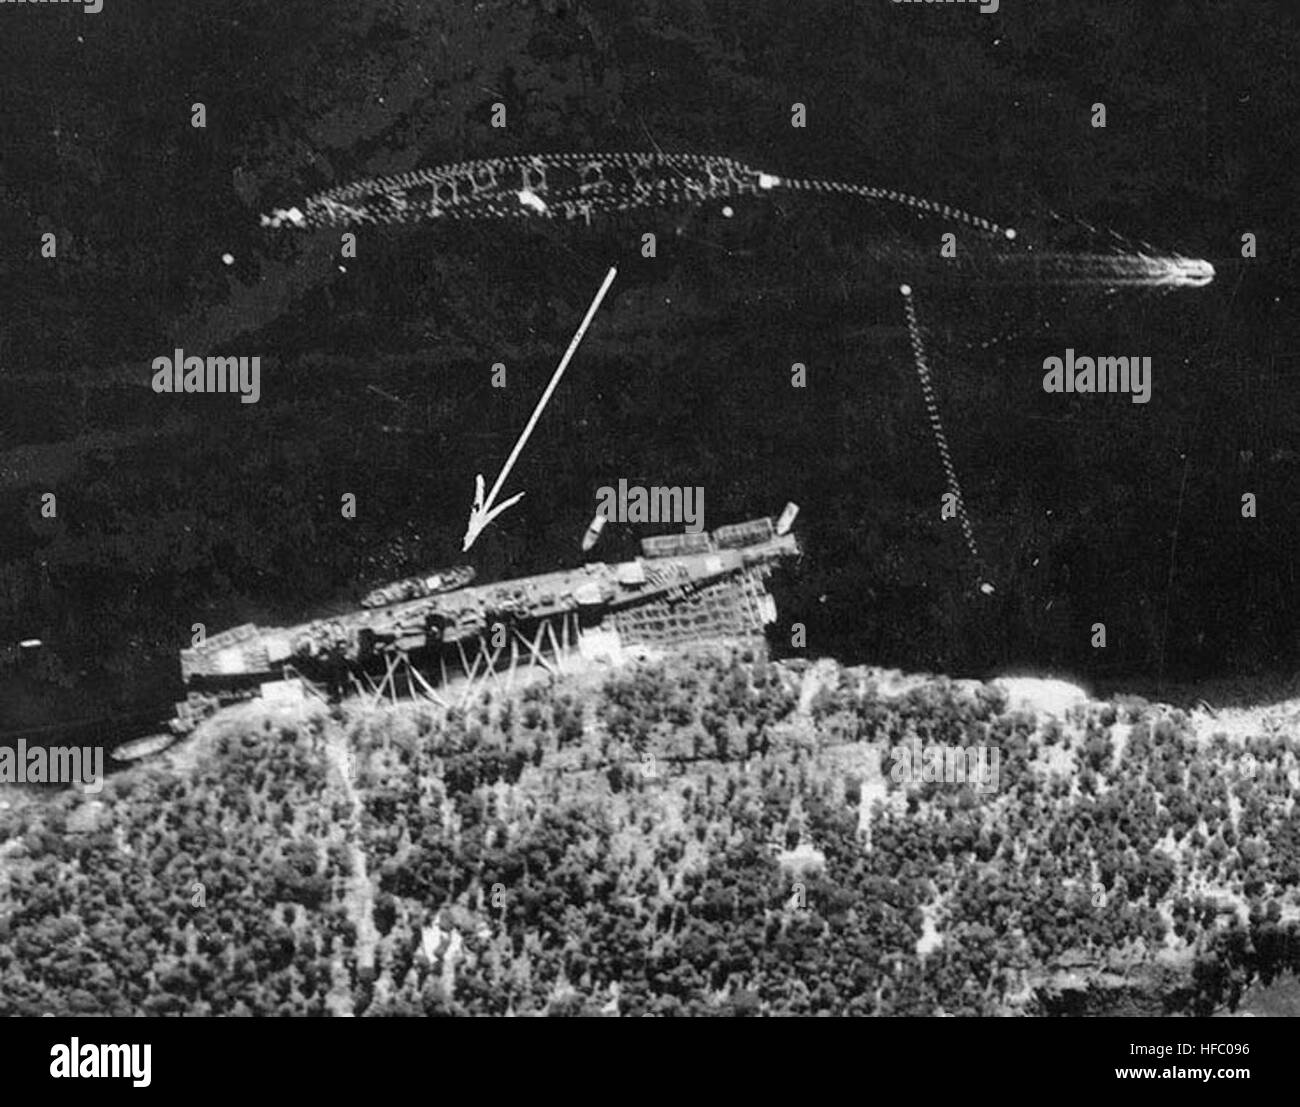 Köln (Alemania Light Cruiser 1930 - 1945), Fotografía de reconocimiento,  probablemente tomada por la Real Fuerza Aérea británica, mostrando el buque  (marcada con una flecha) amarrados a la orilla del mar, en